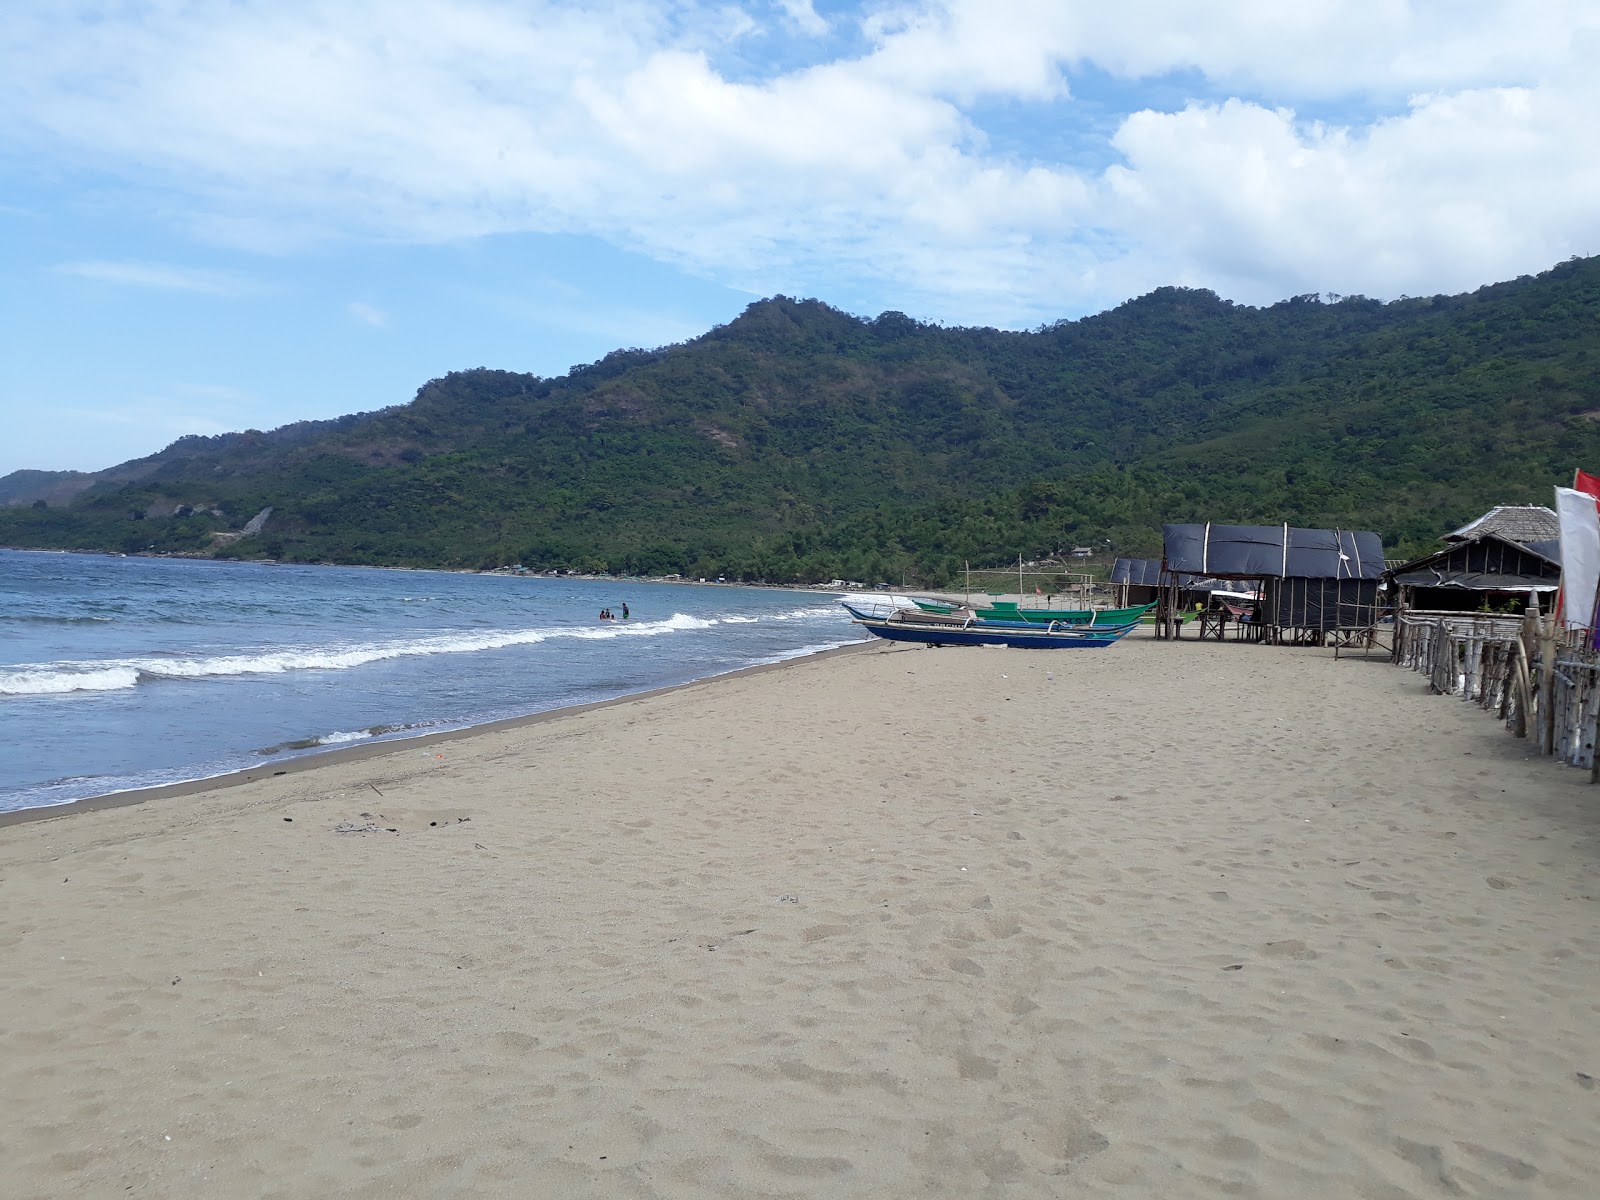 Fotografija Patungan beach priljubljeno mesto med poznavalci sprostitve